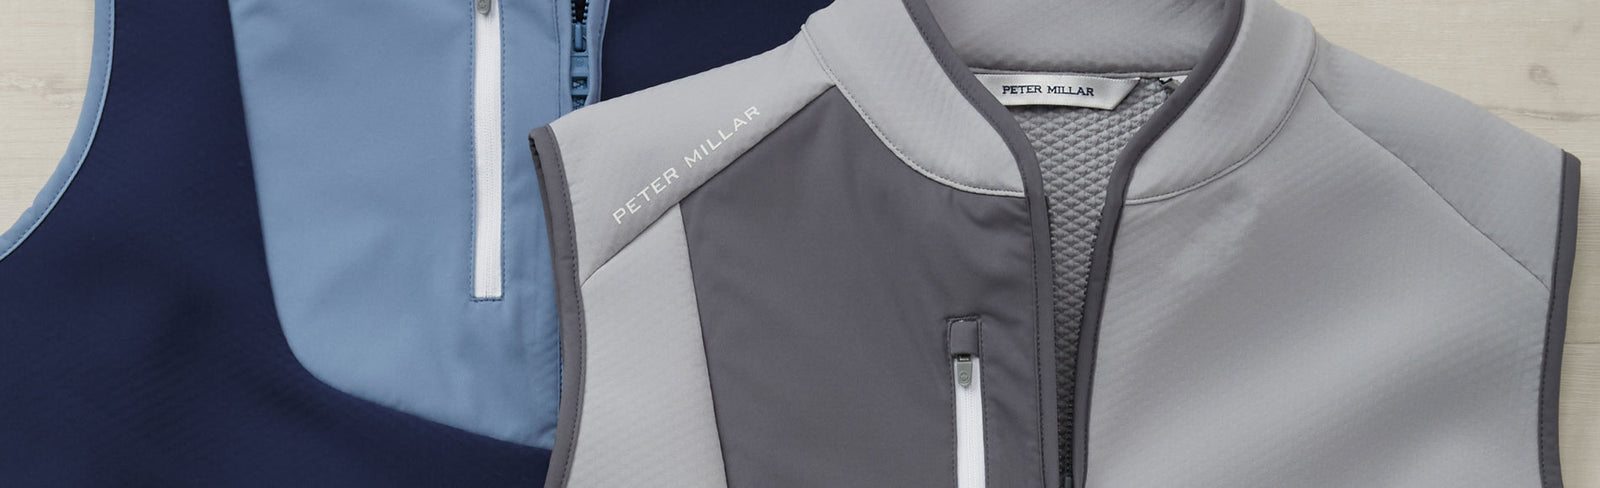 Polo Ralph Lauren Microfiber Full-Zip Waist-Length Jacket - Westport Big &  Tall